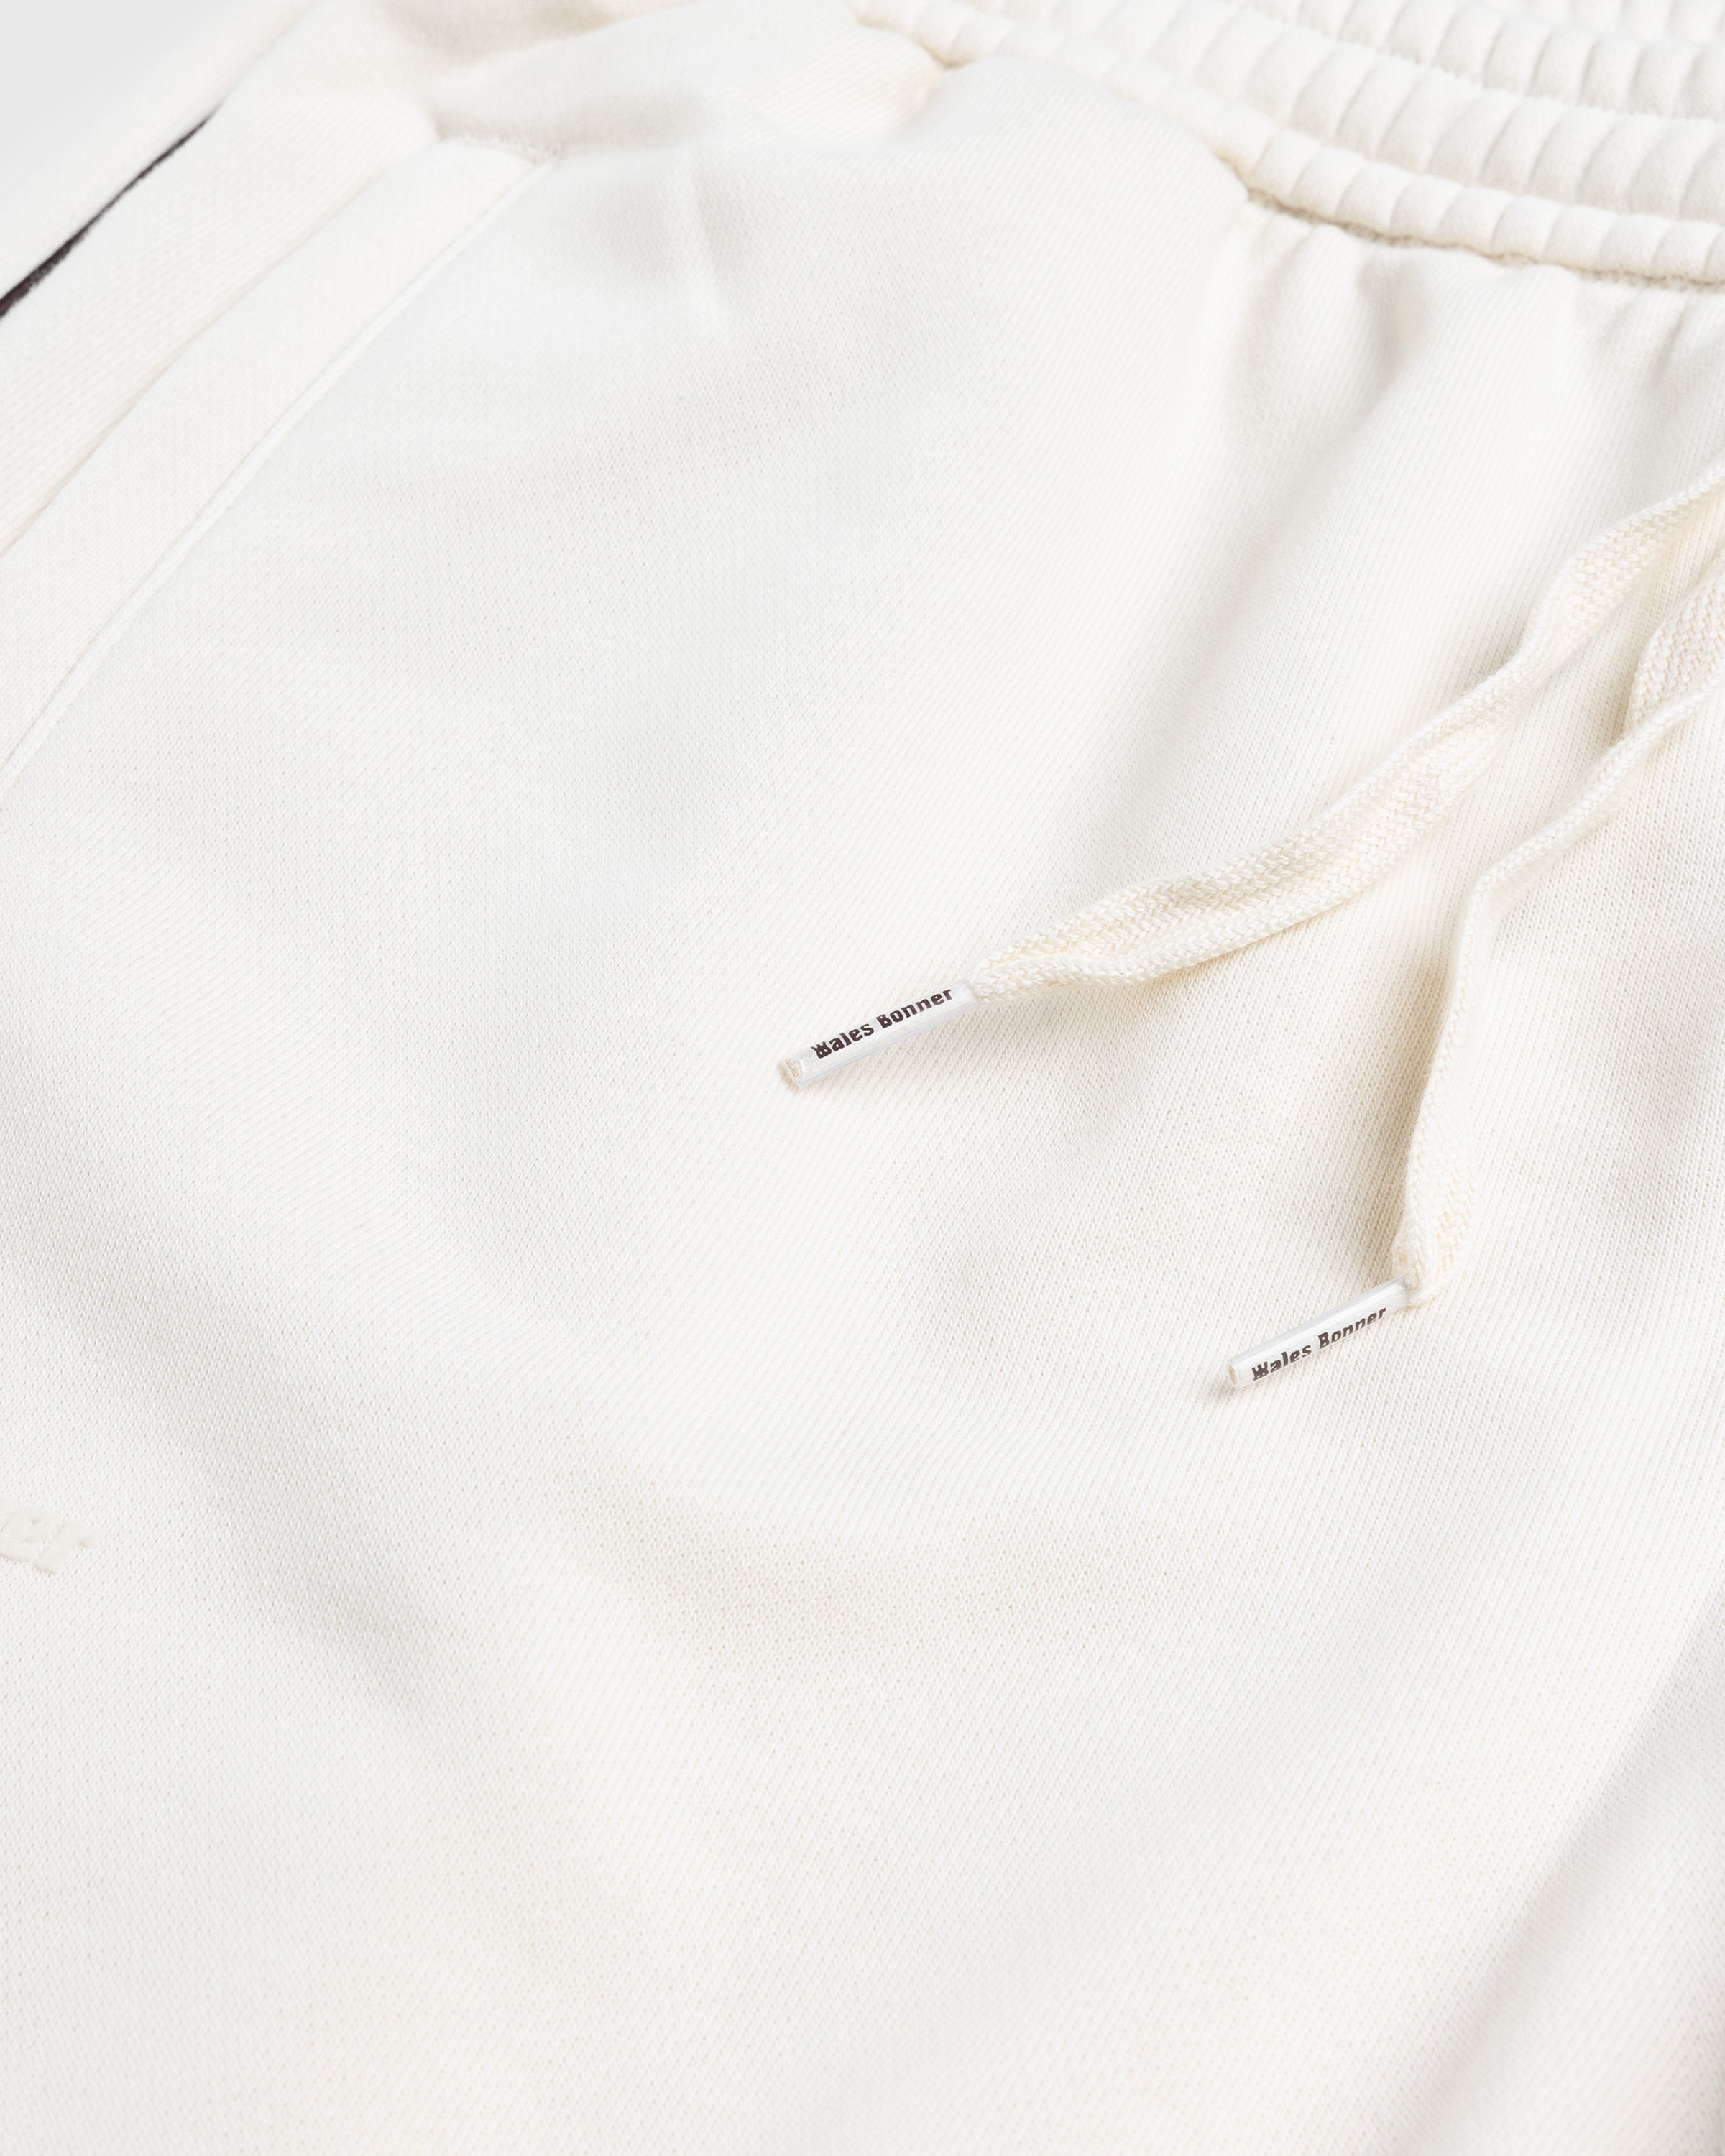 Adidas x Wales Bonner - Sweatpants Wonder White - Clothing - Beige - Image 6